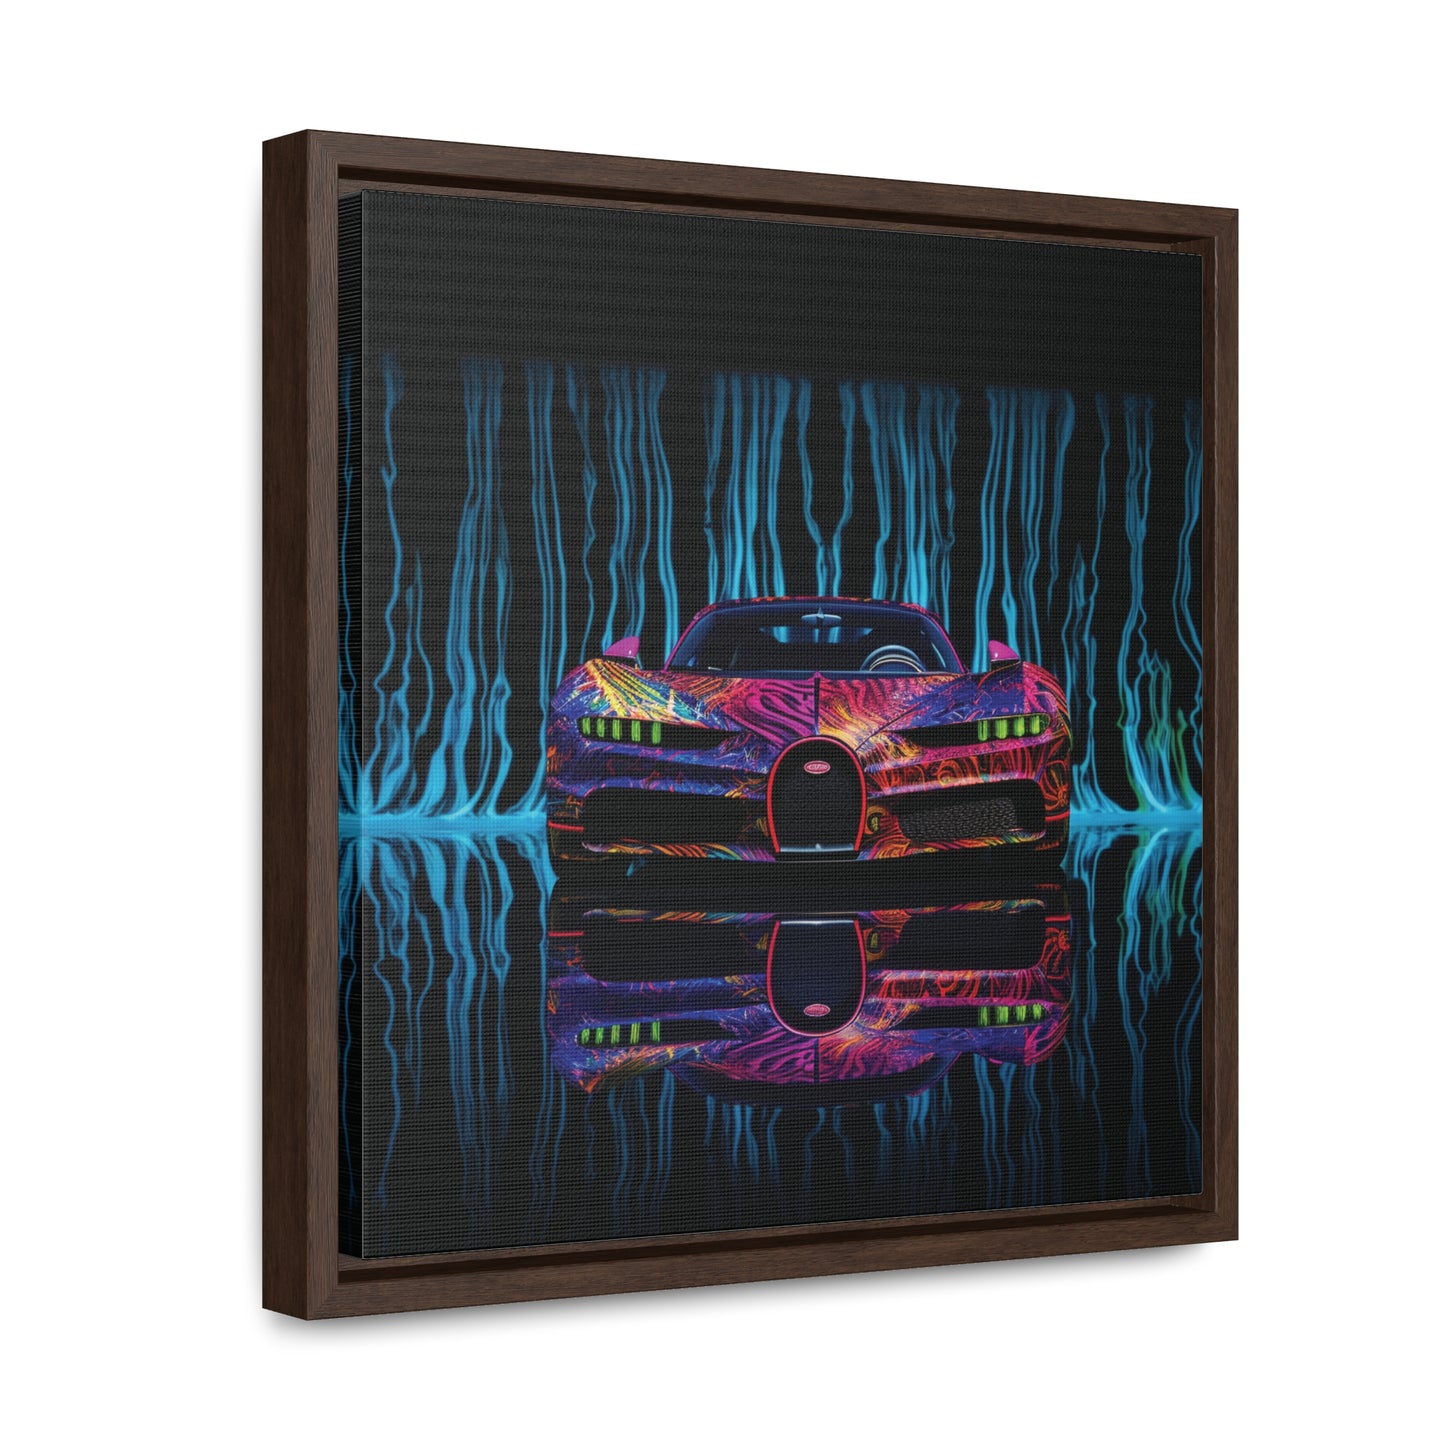 Gallery Canvas Wraps, Square Frame Bugatti Water 3